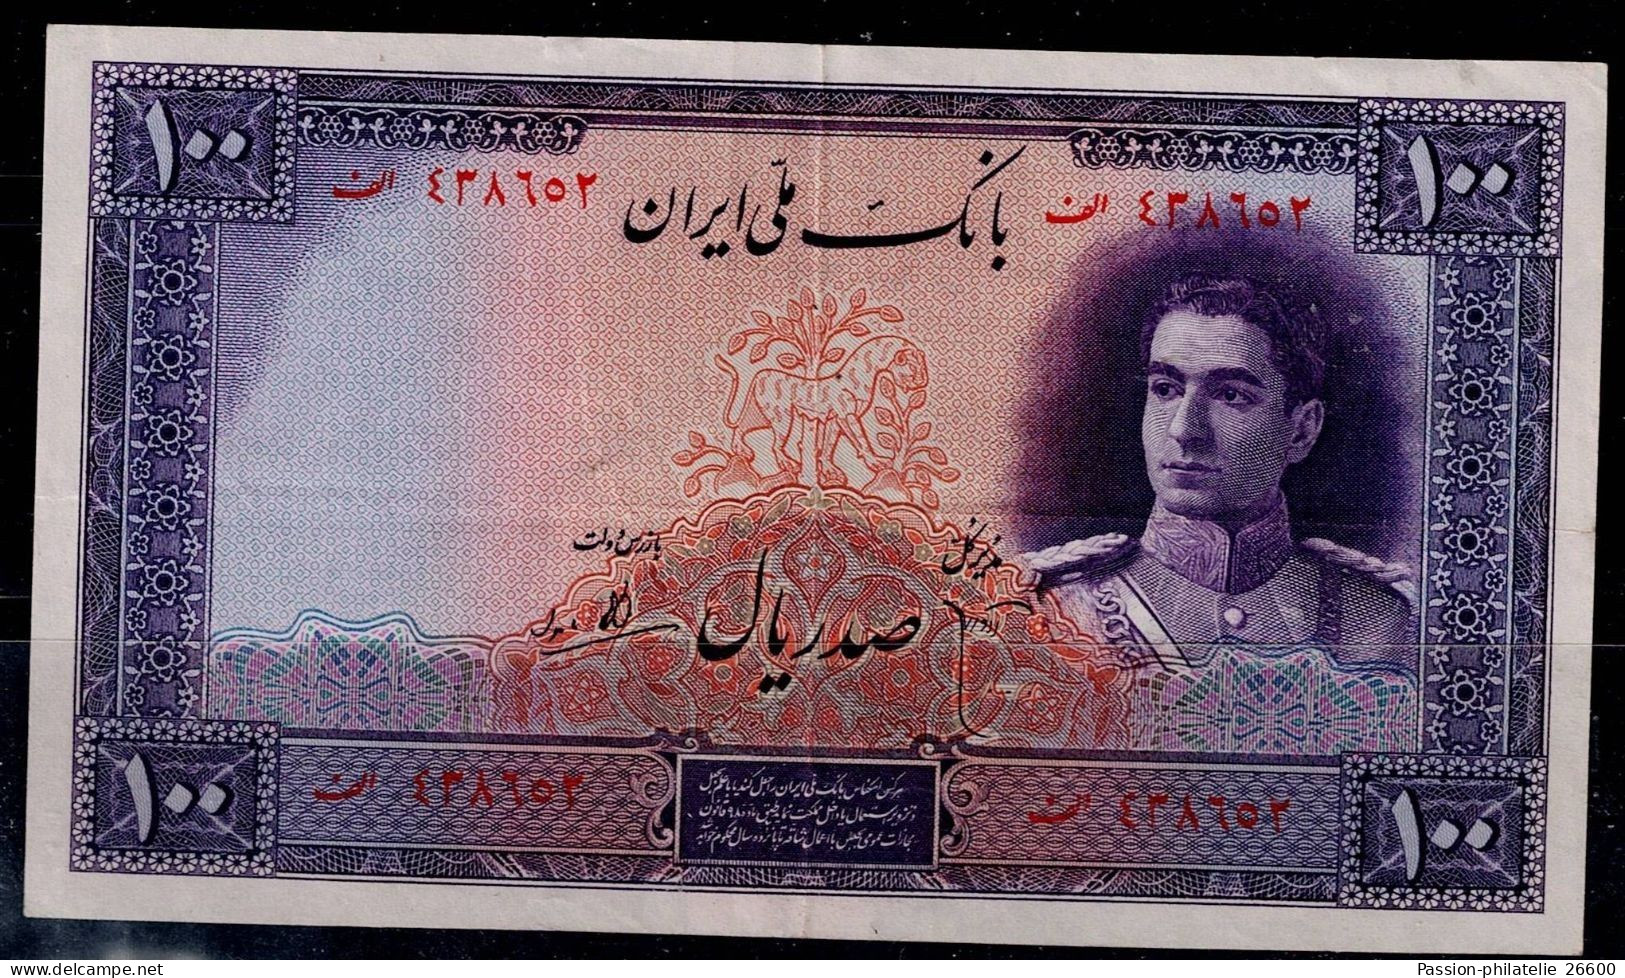 IRAN 1944 BANKNOTES 100 RIALS PURPLE CATALOG PIK No 44 VF!! - Iran